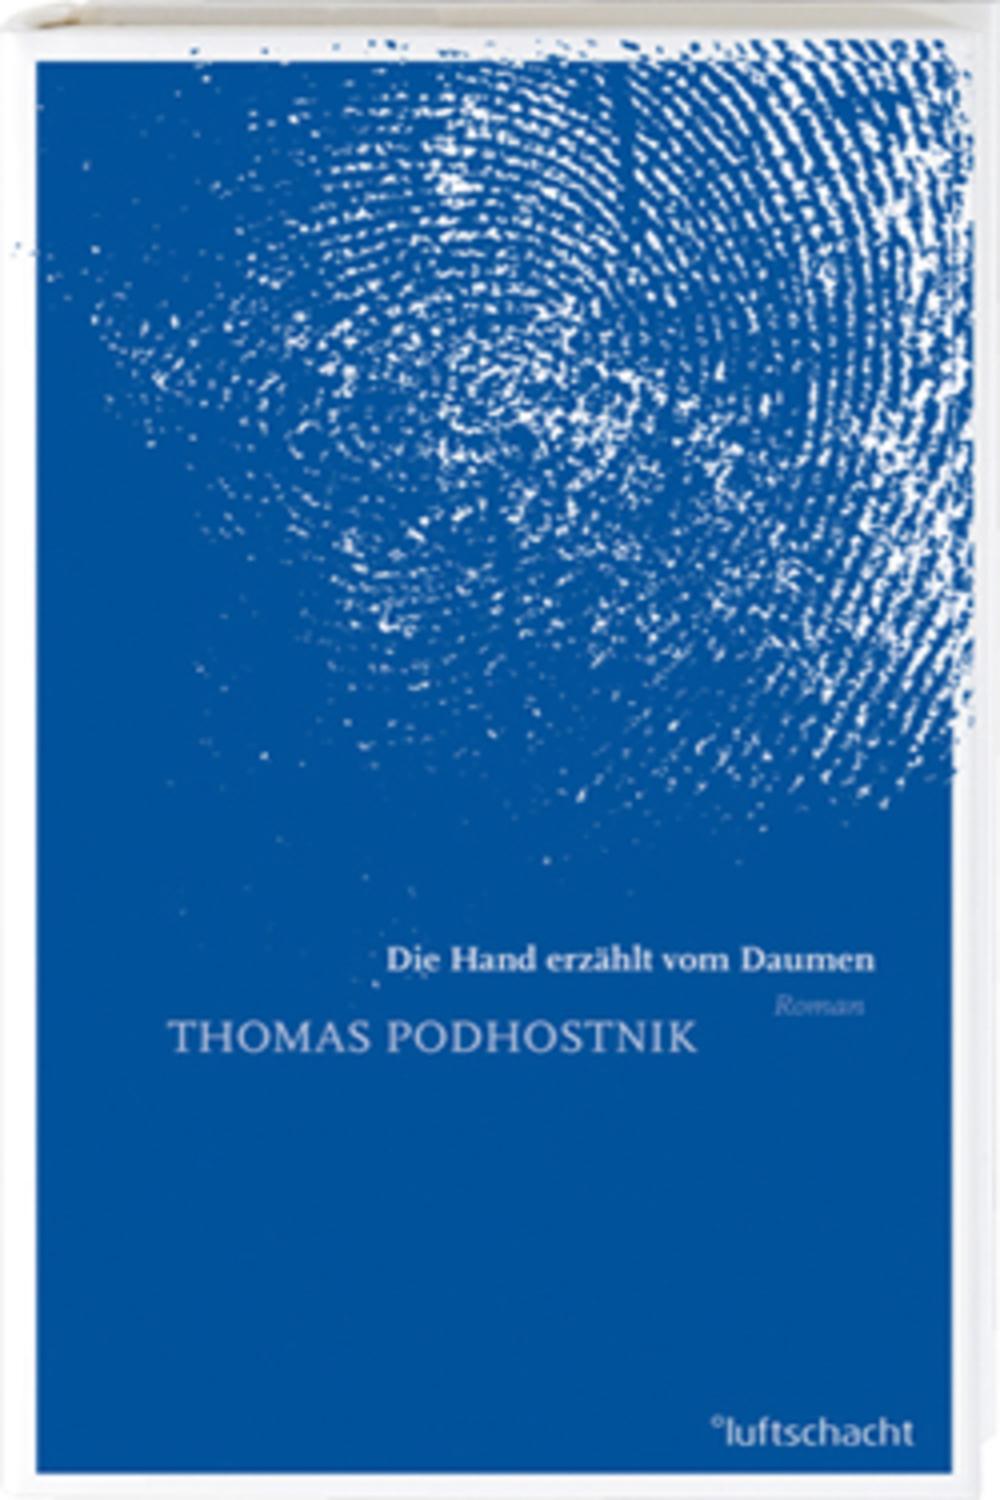 Die Hand erzählt vom Daumen - Thomas Podhostnik